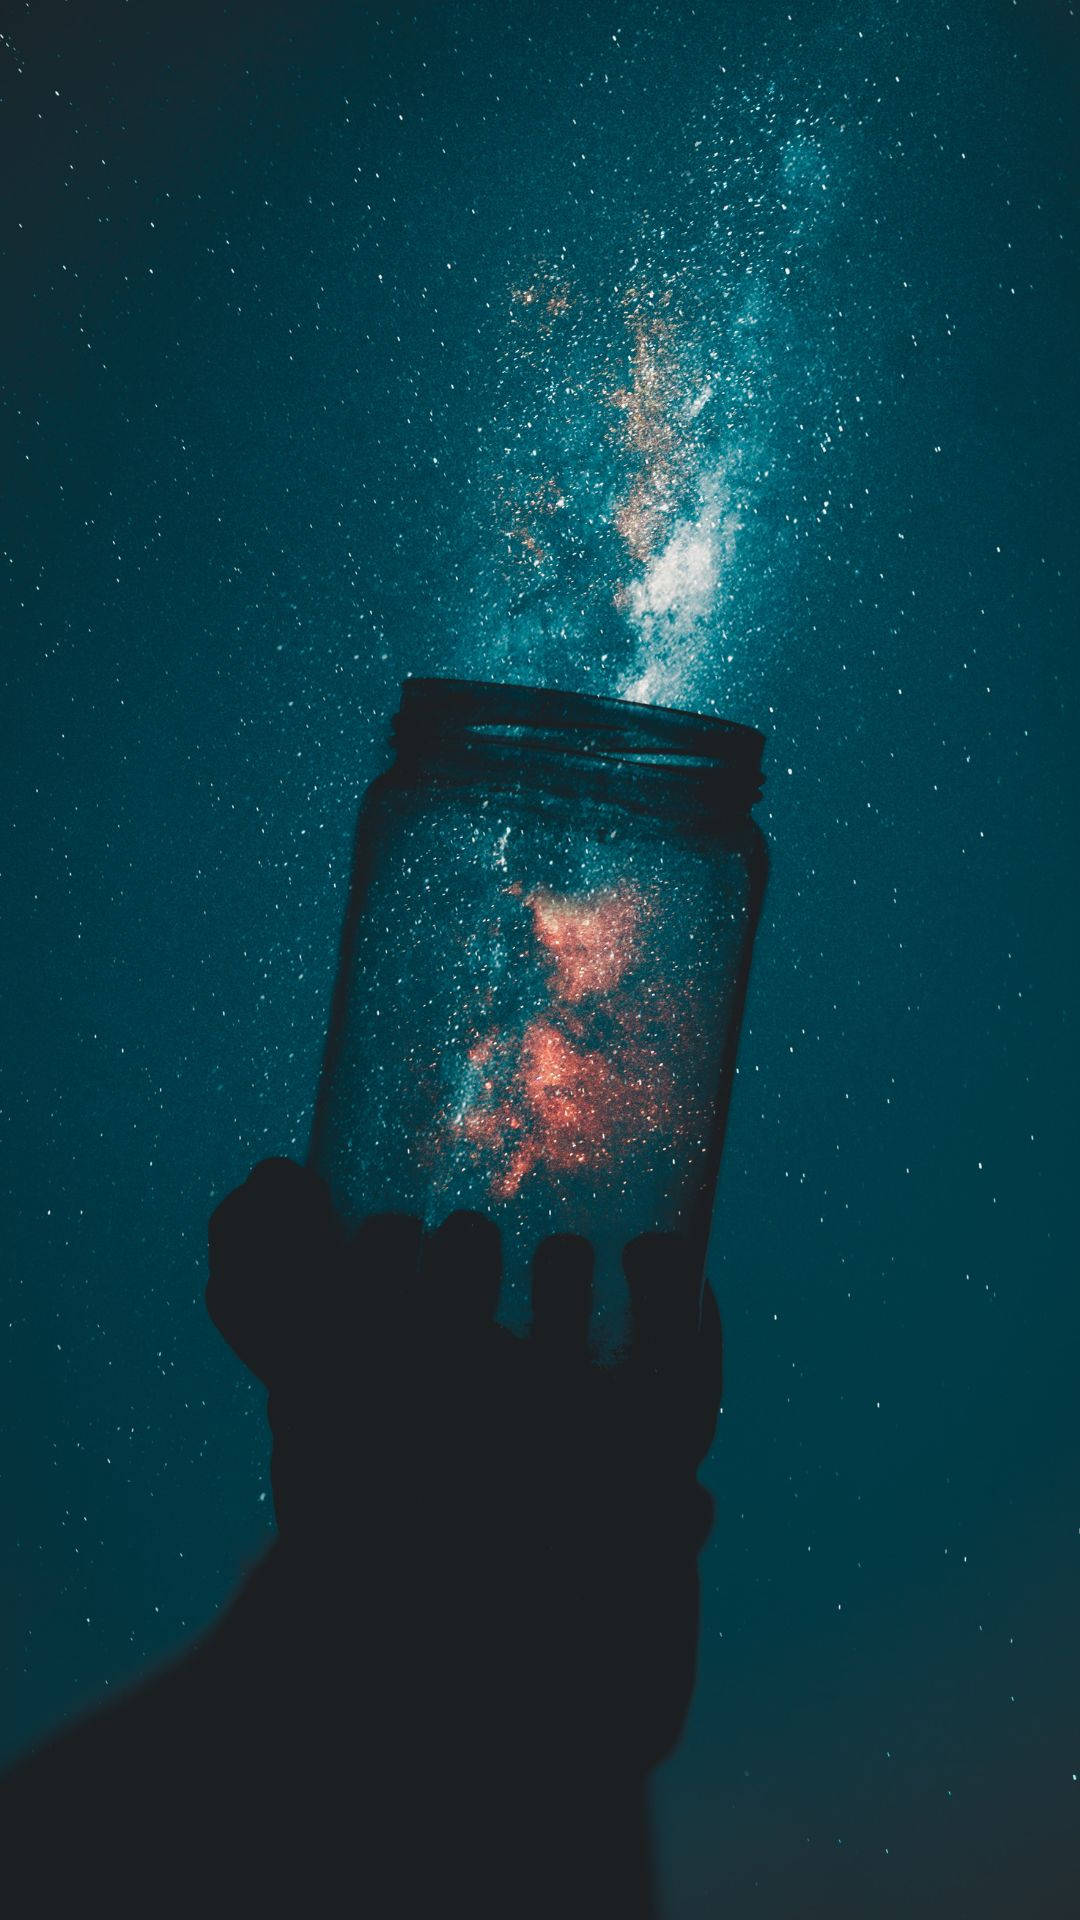 Empty Jar In Cute Galaxy Background